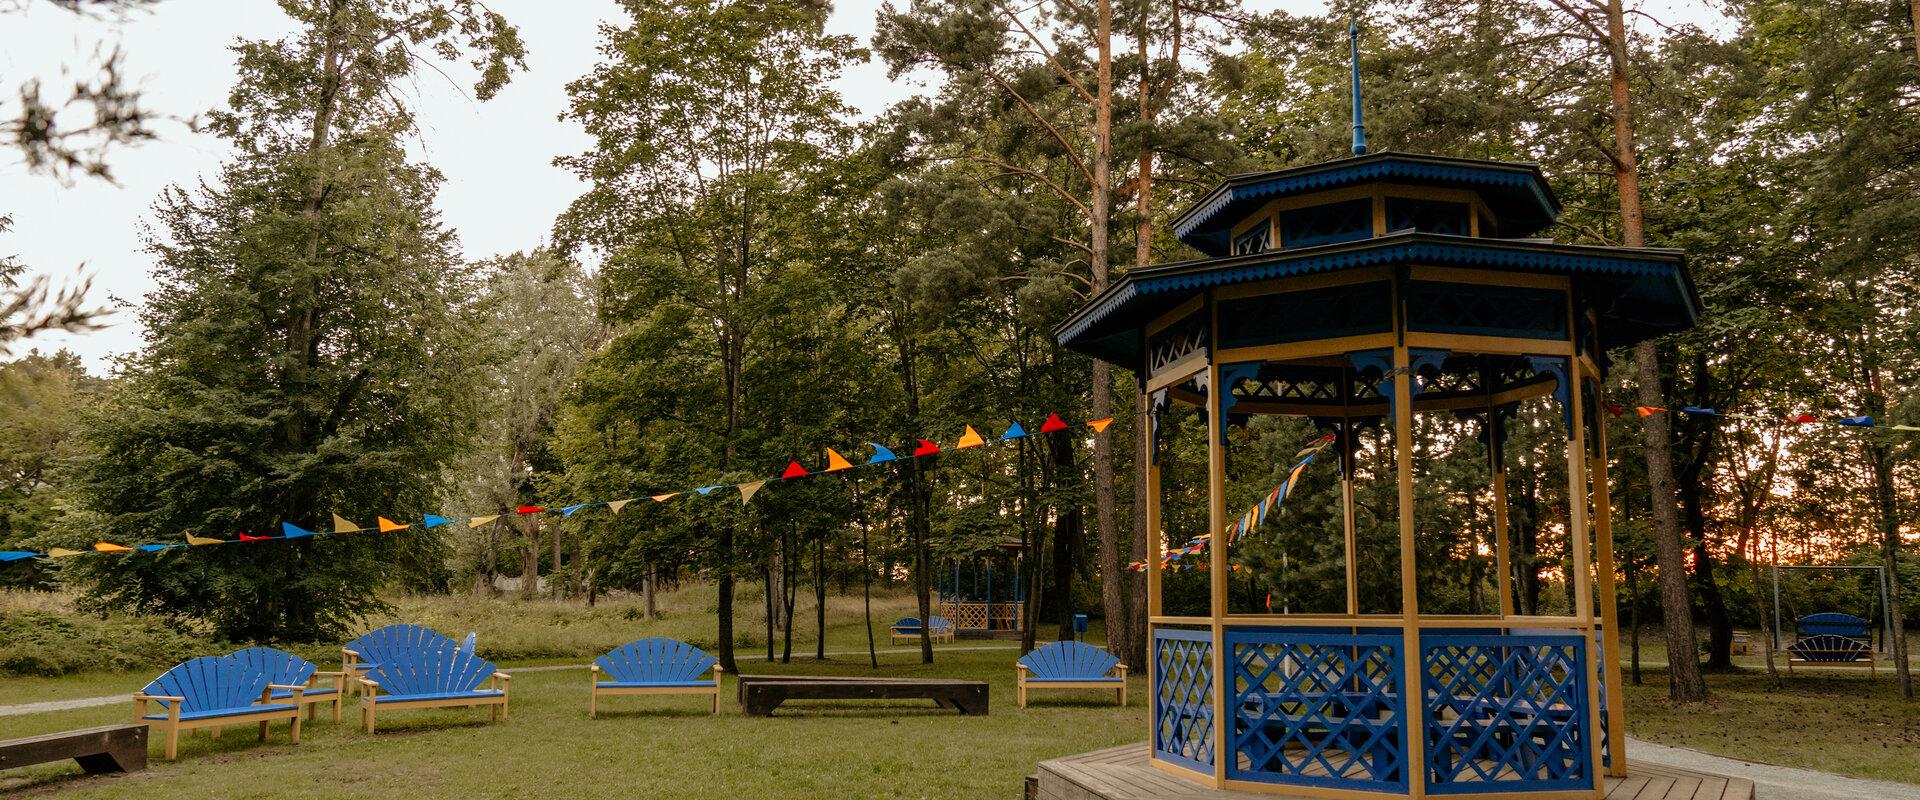 Narva-Jõesuu Päikese park